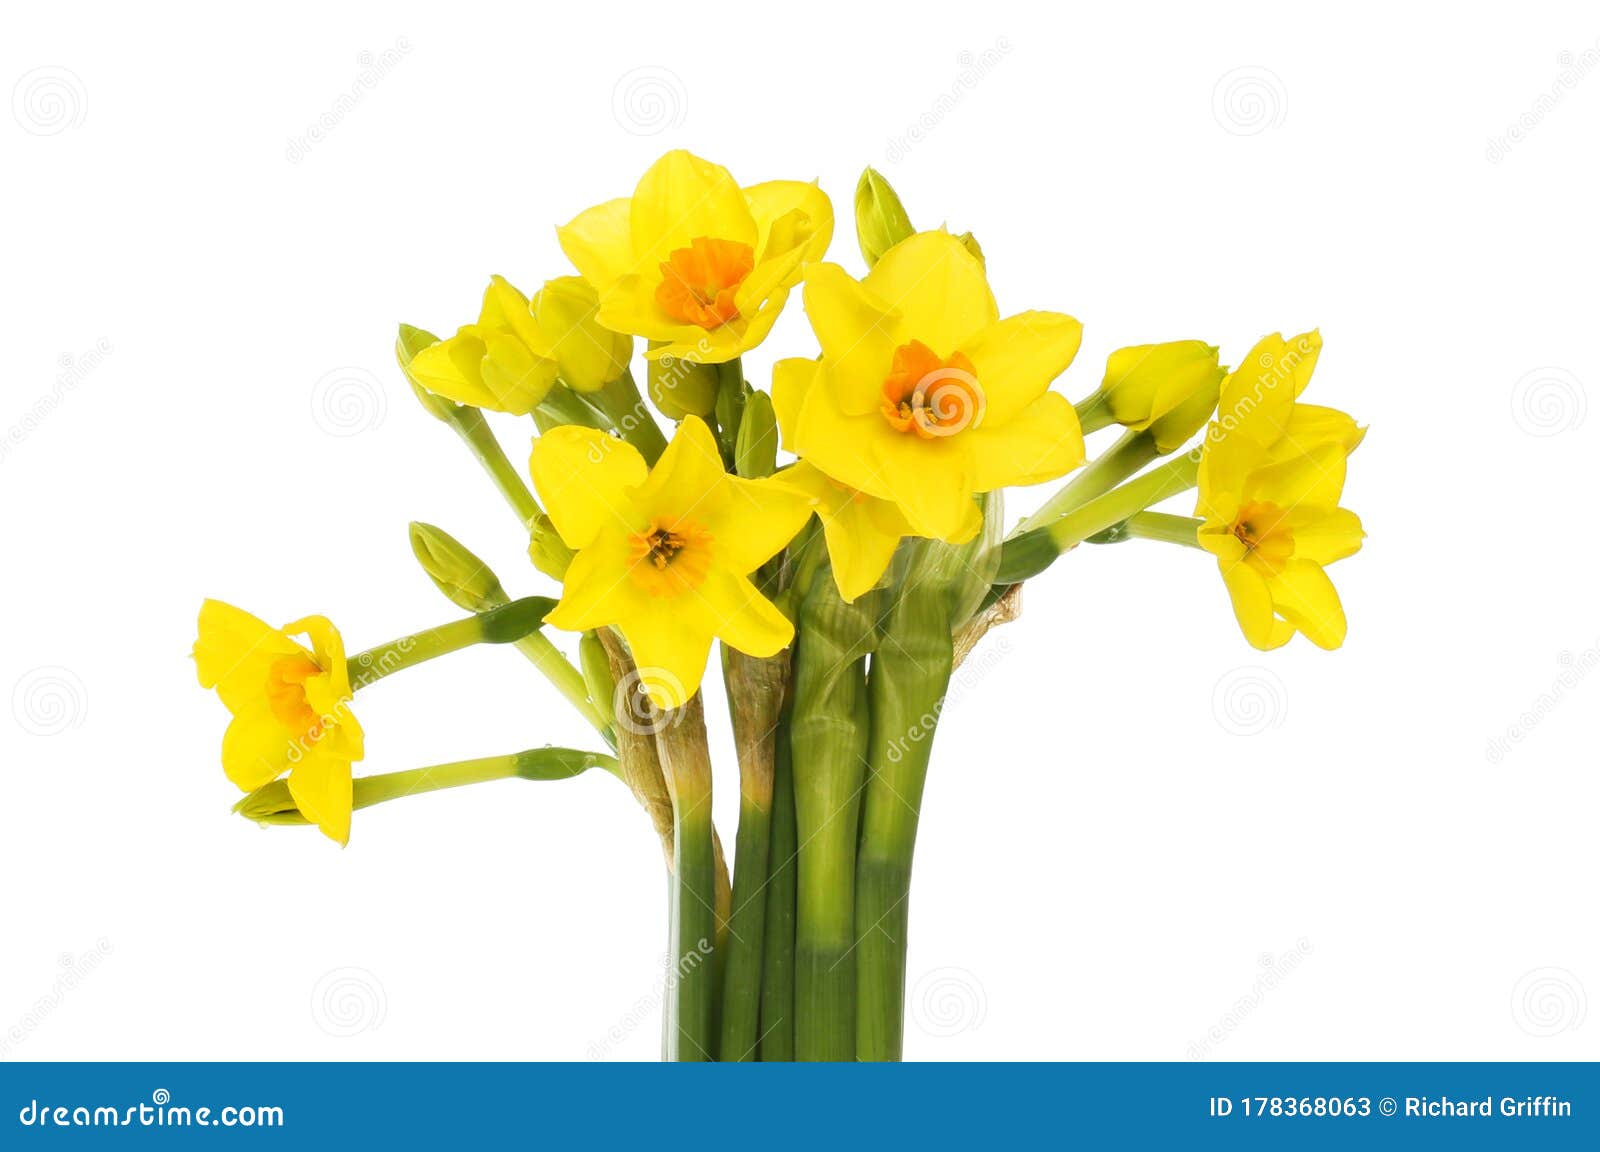 Bouquet De Fleurs De Narcisse Image stock - Image du flore, fond: 178368063